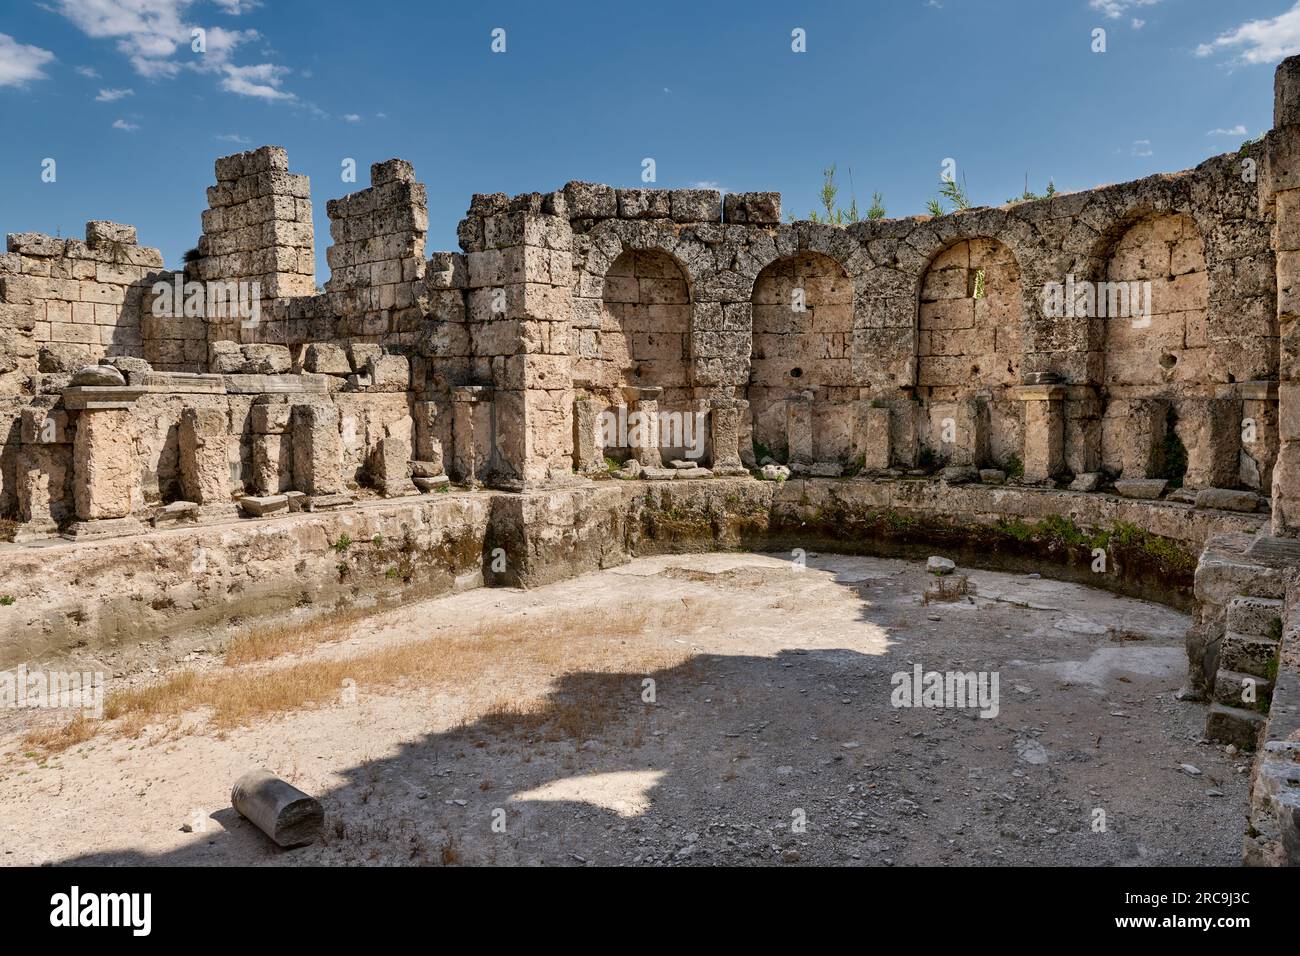 roemische suedliche Therme, Ruinen der roemischen Stadt Perge, Antalya, Türkei    |Roman South Bath, ruins of the Roman city of Perge, Antalya, Turkey Stock Photo